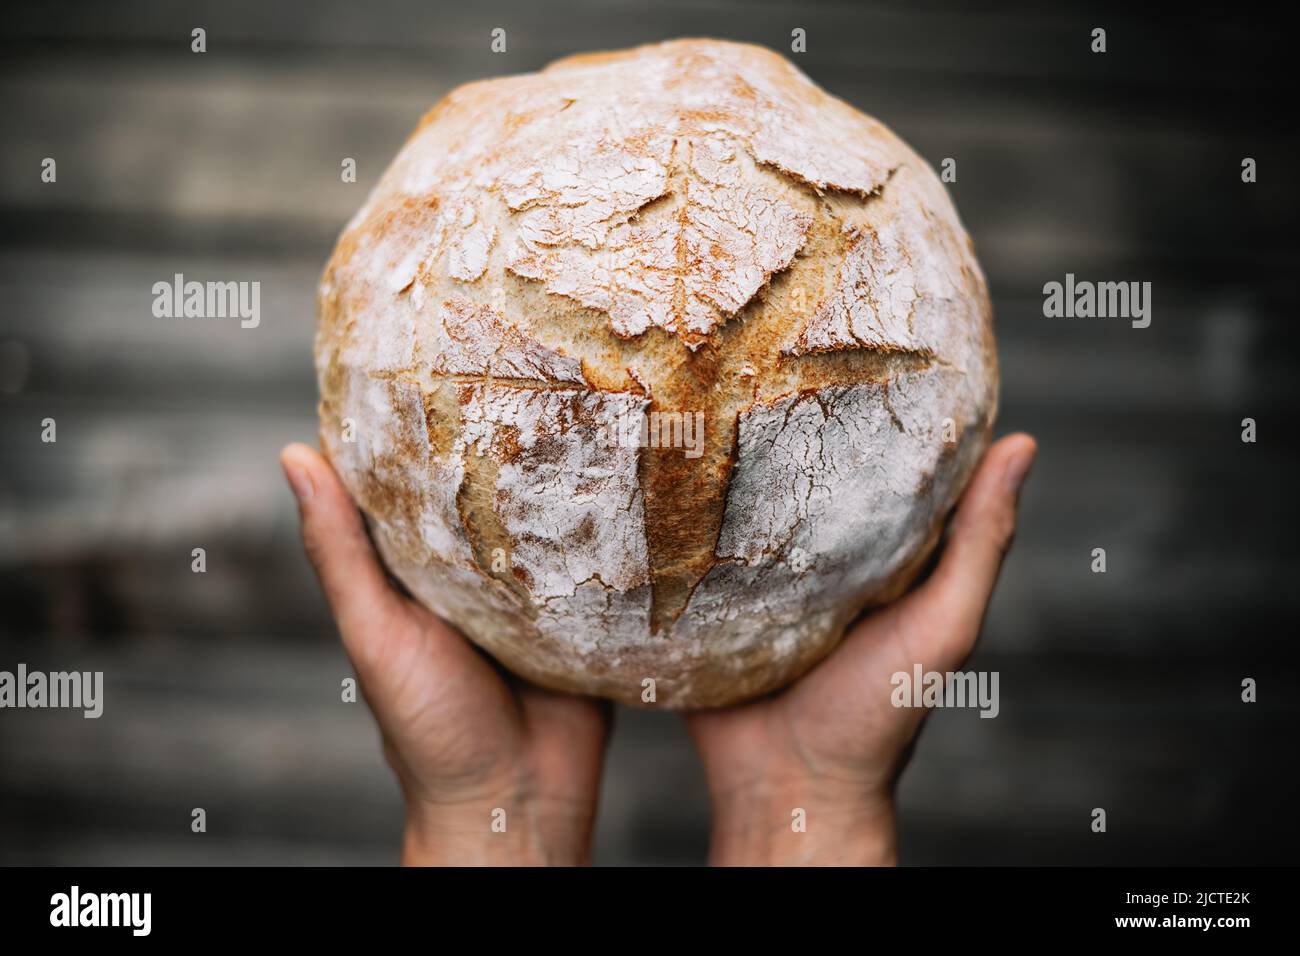 Traditionelles Sauerteig-Brot in Bäckerhand auf einem rustikalen Holztisch. Fotos von gesunden Lebensmitteln Stockfoto